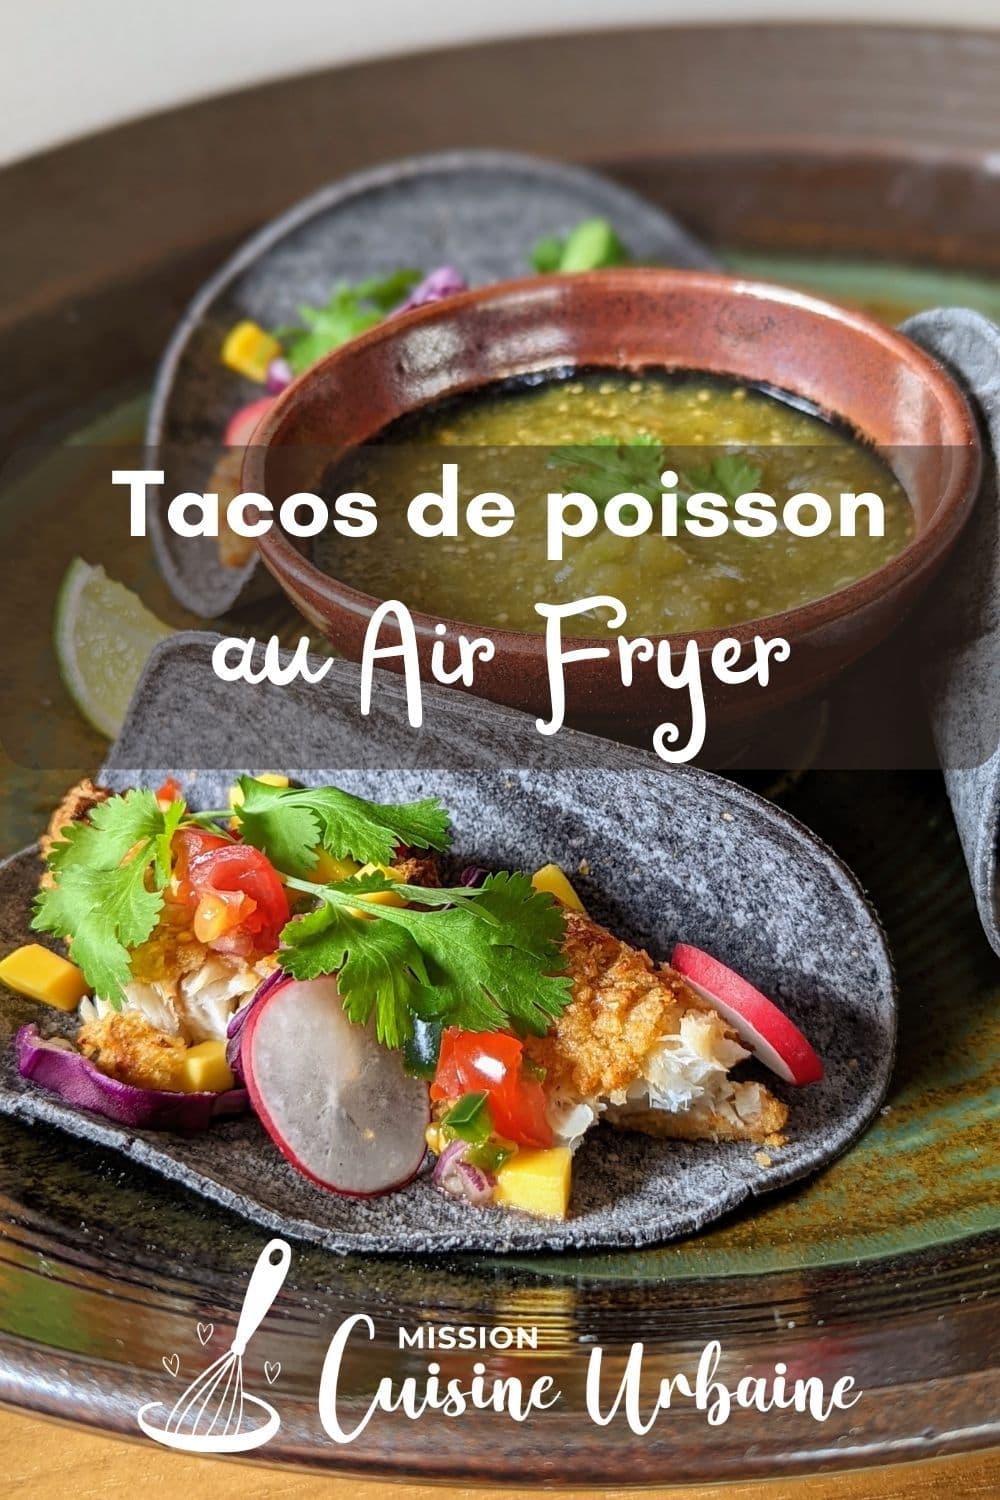 tacos de poisson Air Fryer Mission cuisine Urbaine